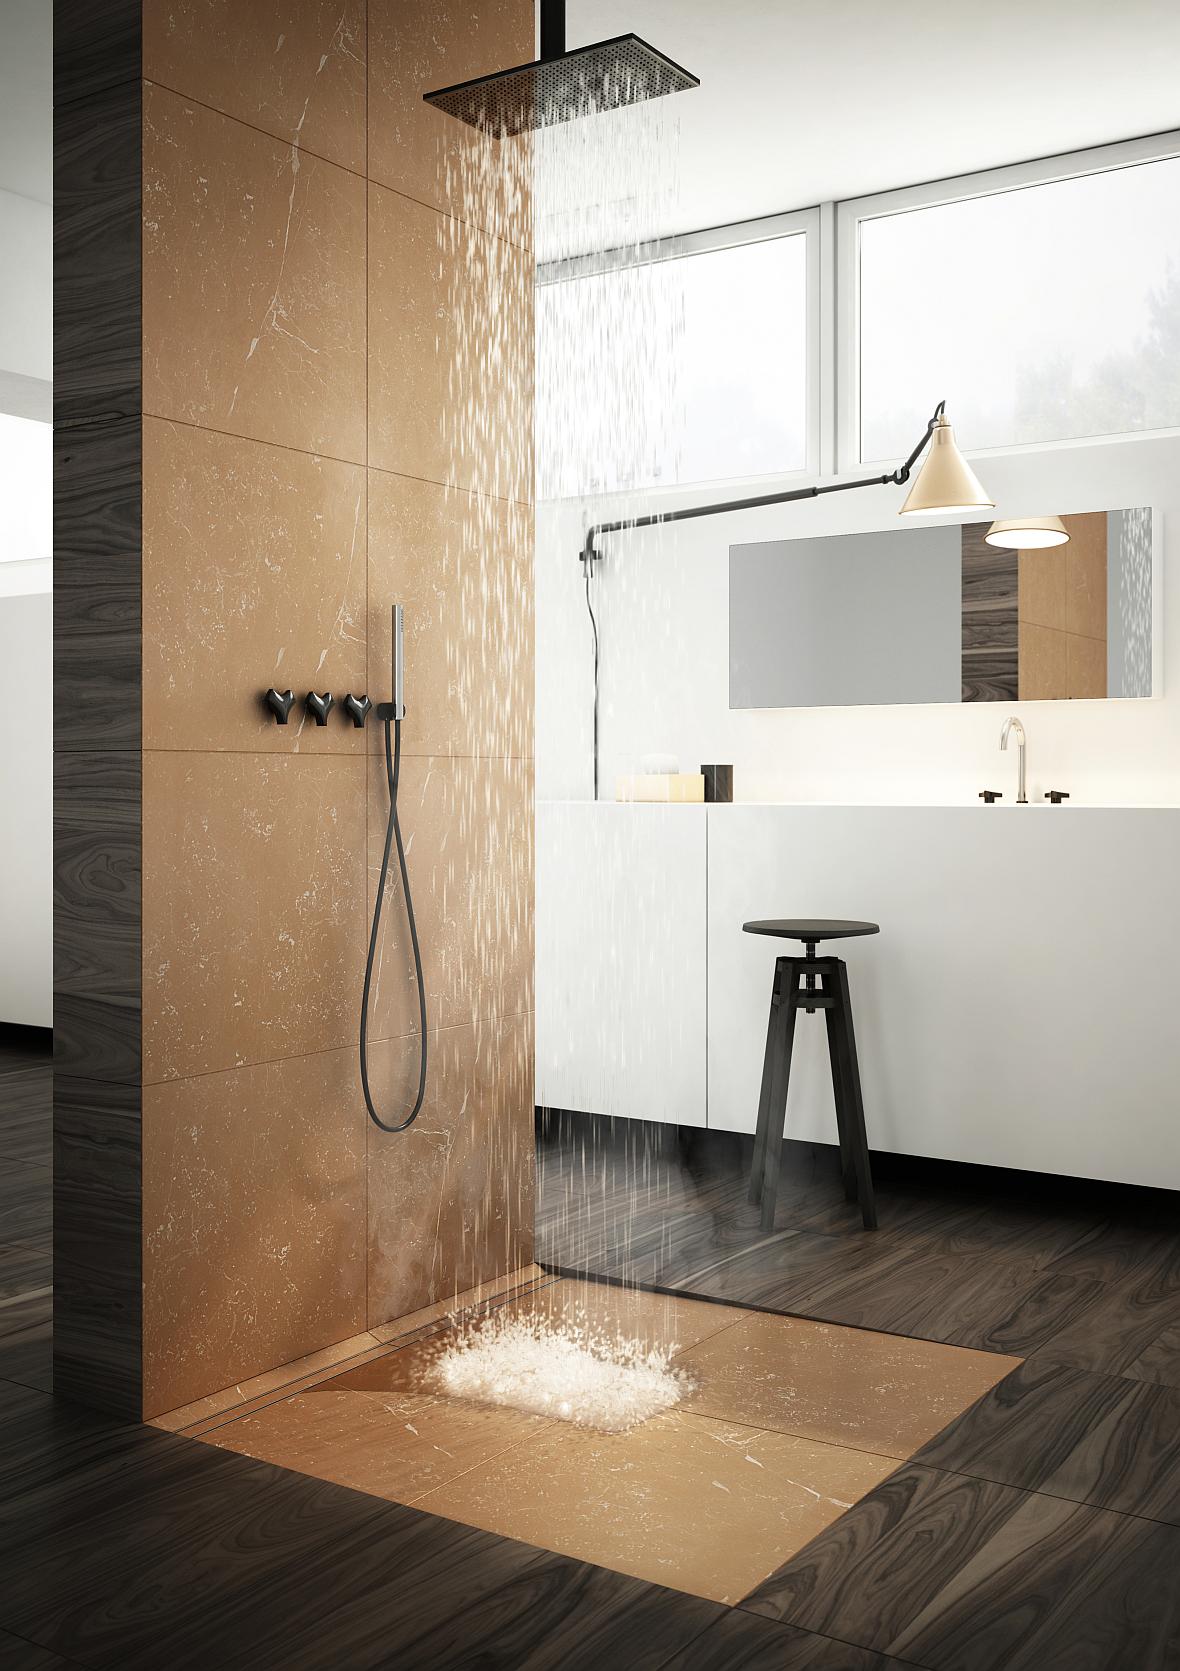 Выбирая непороговый душ со сливом, установленным прямо в полу, мы должны выбрать одно из двух доступных решений - линейный слив или неглубокий душевой поддон